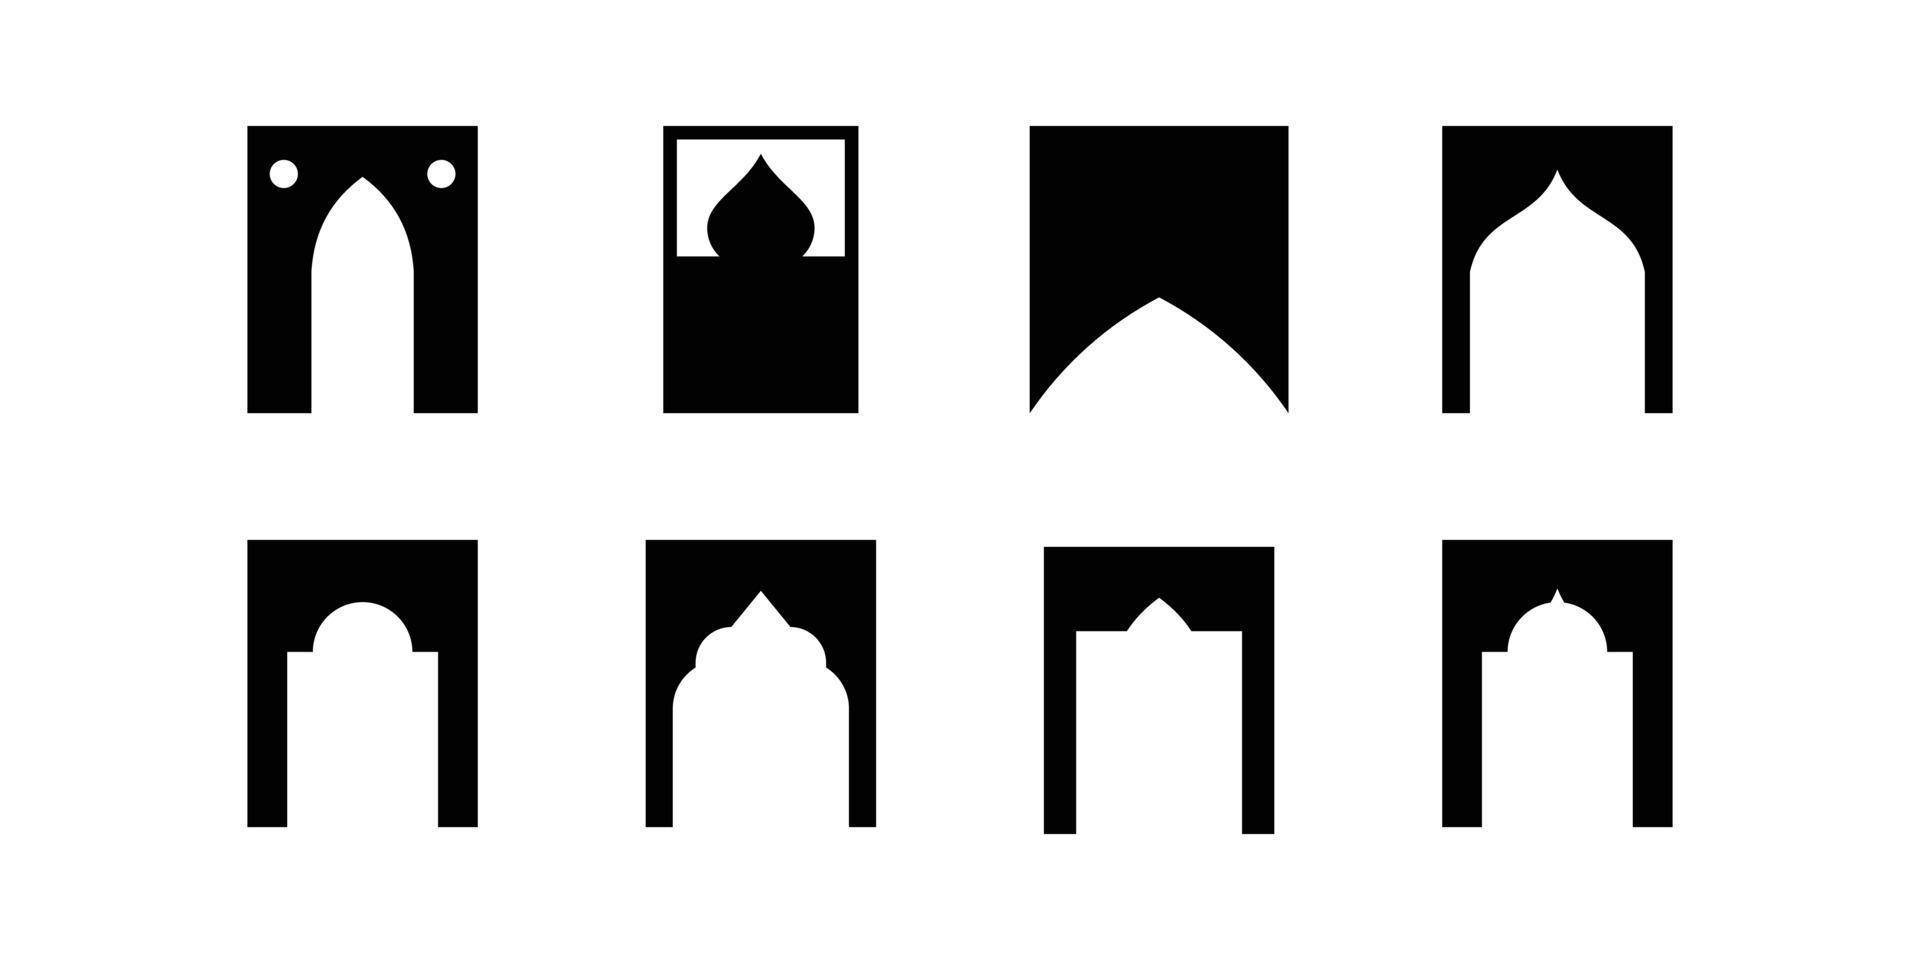 conjunto do árabe janelas arco vários formas para mesquita, muçulmano e islâmico arquitetura. vetor realista conjunto do antigo árabe janela quadros